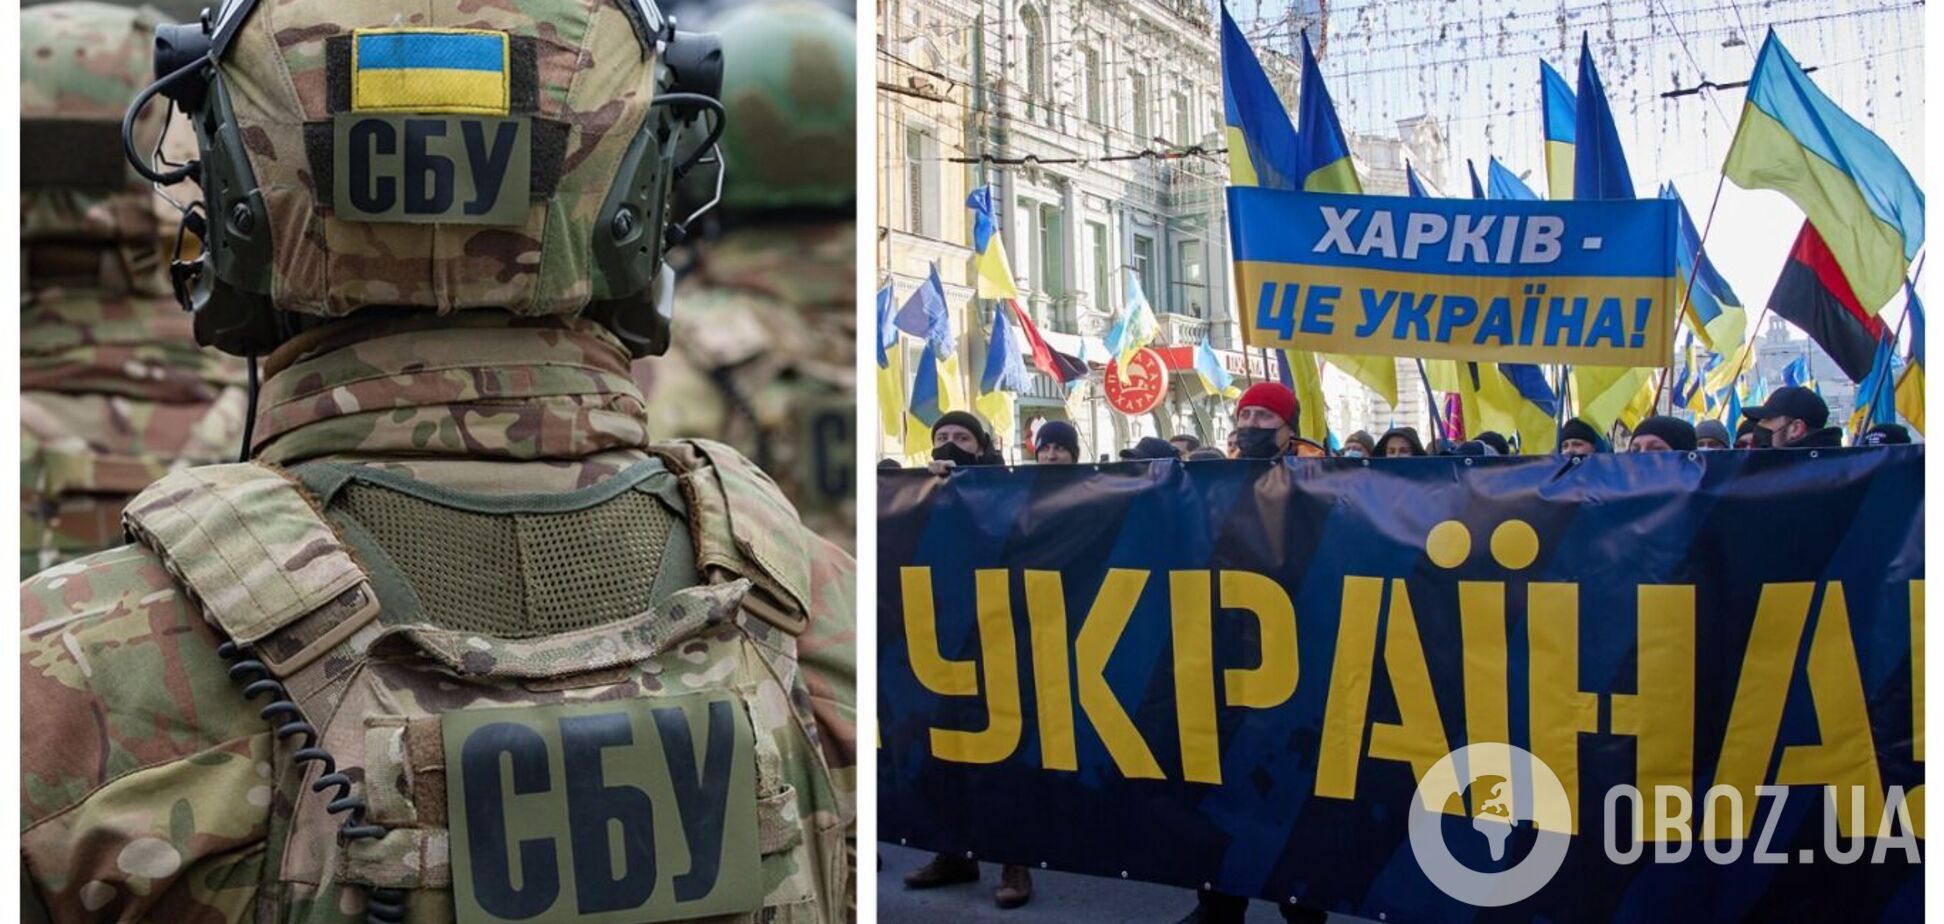 СБУ заявила о предотвращении четырех терактов в Харькове: в сеть 'слили' запись разговора с исполнителем